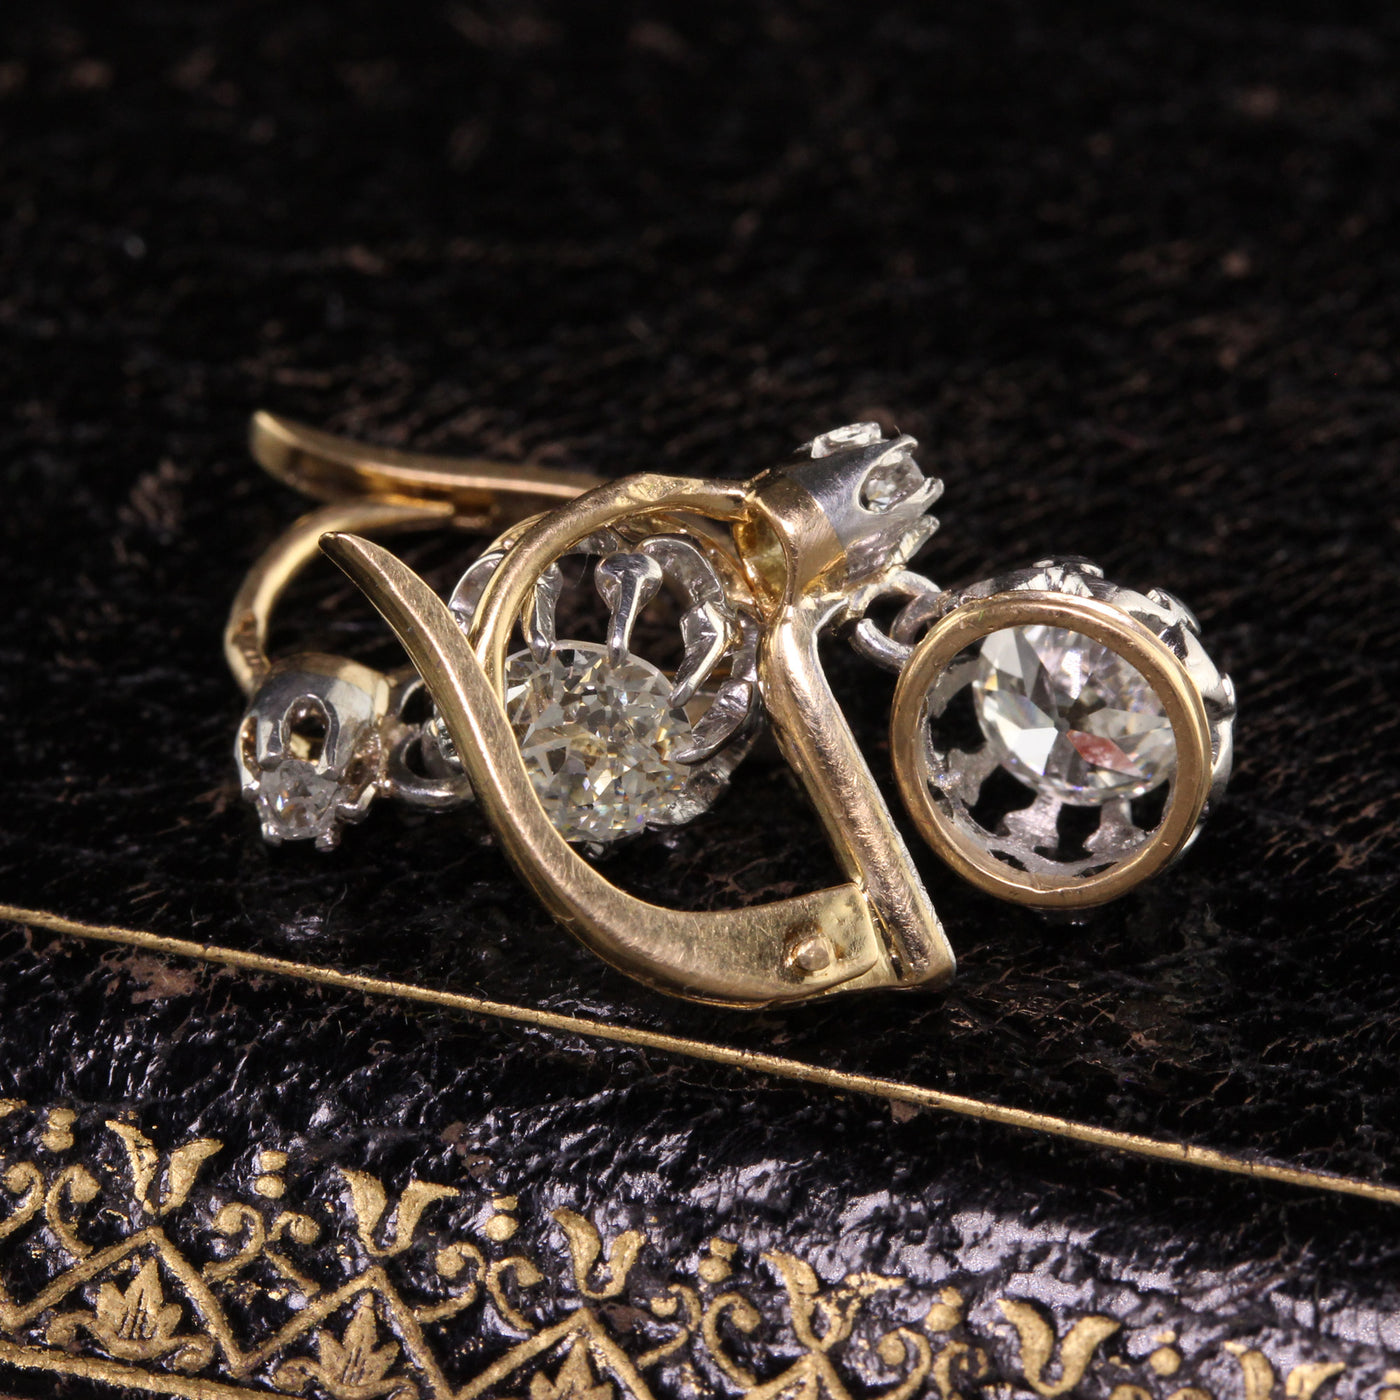 Antique Edwardian French 18K Yellow Gold Old European Diamond Earrings - GIA